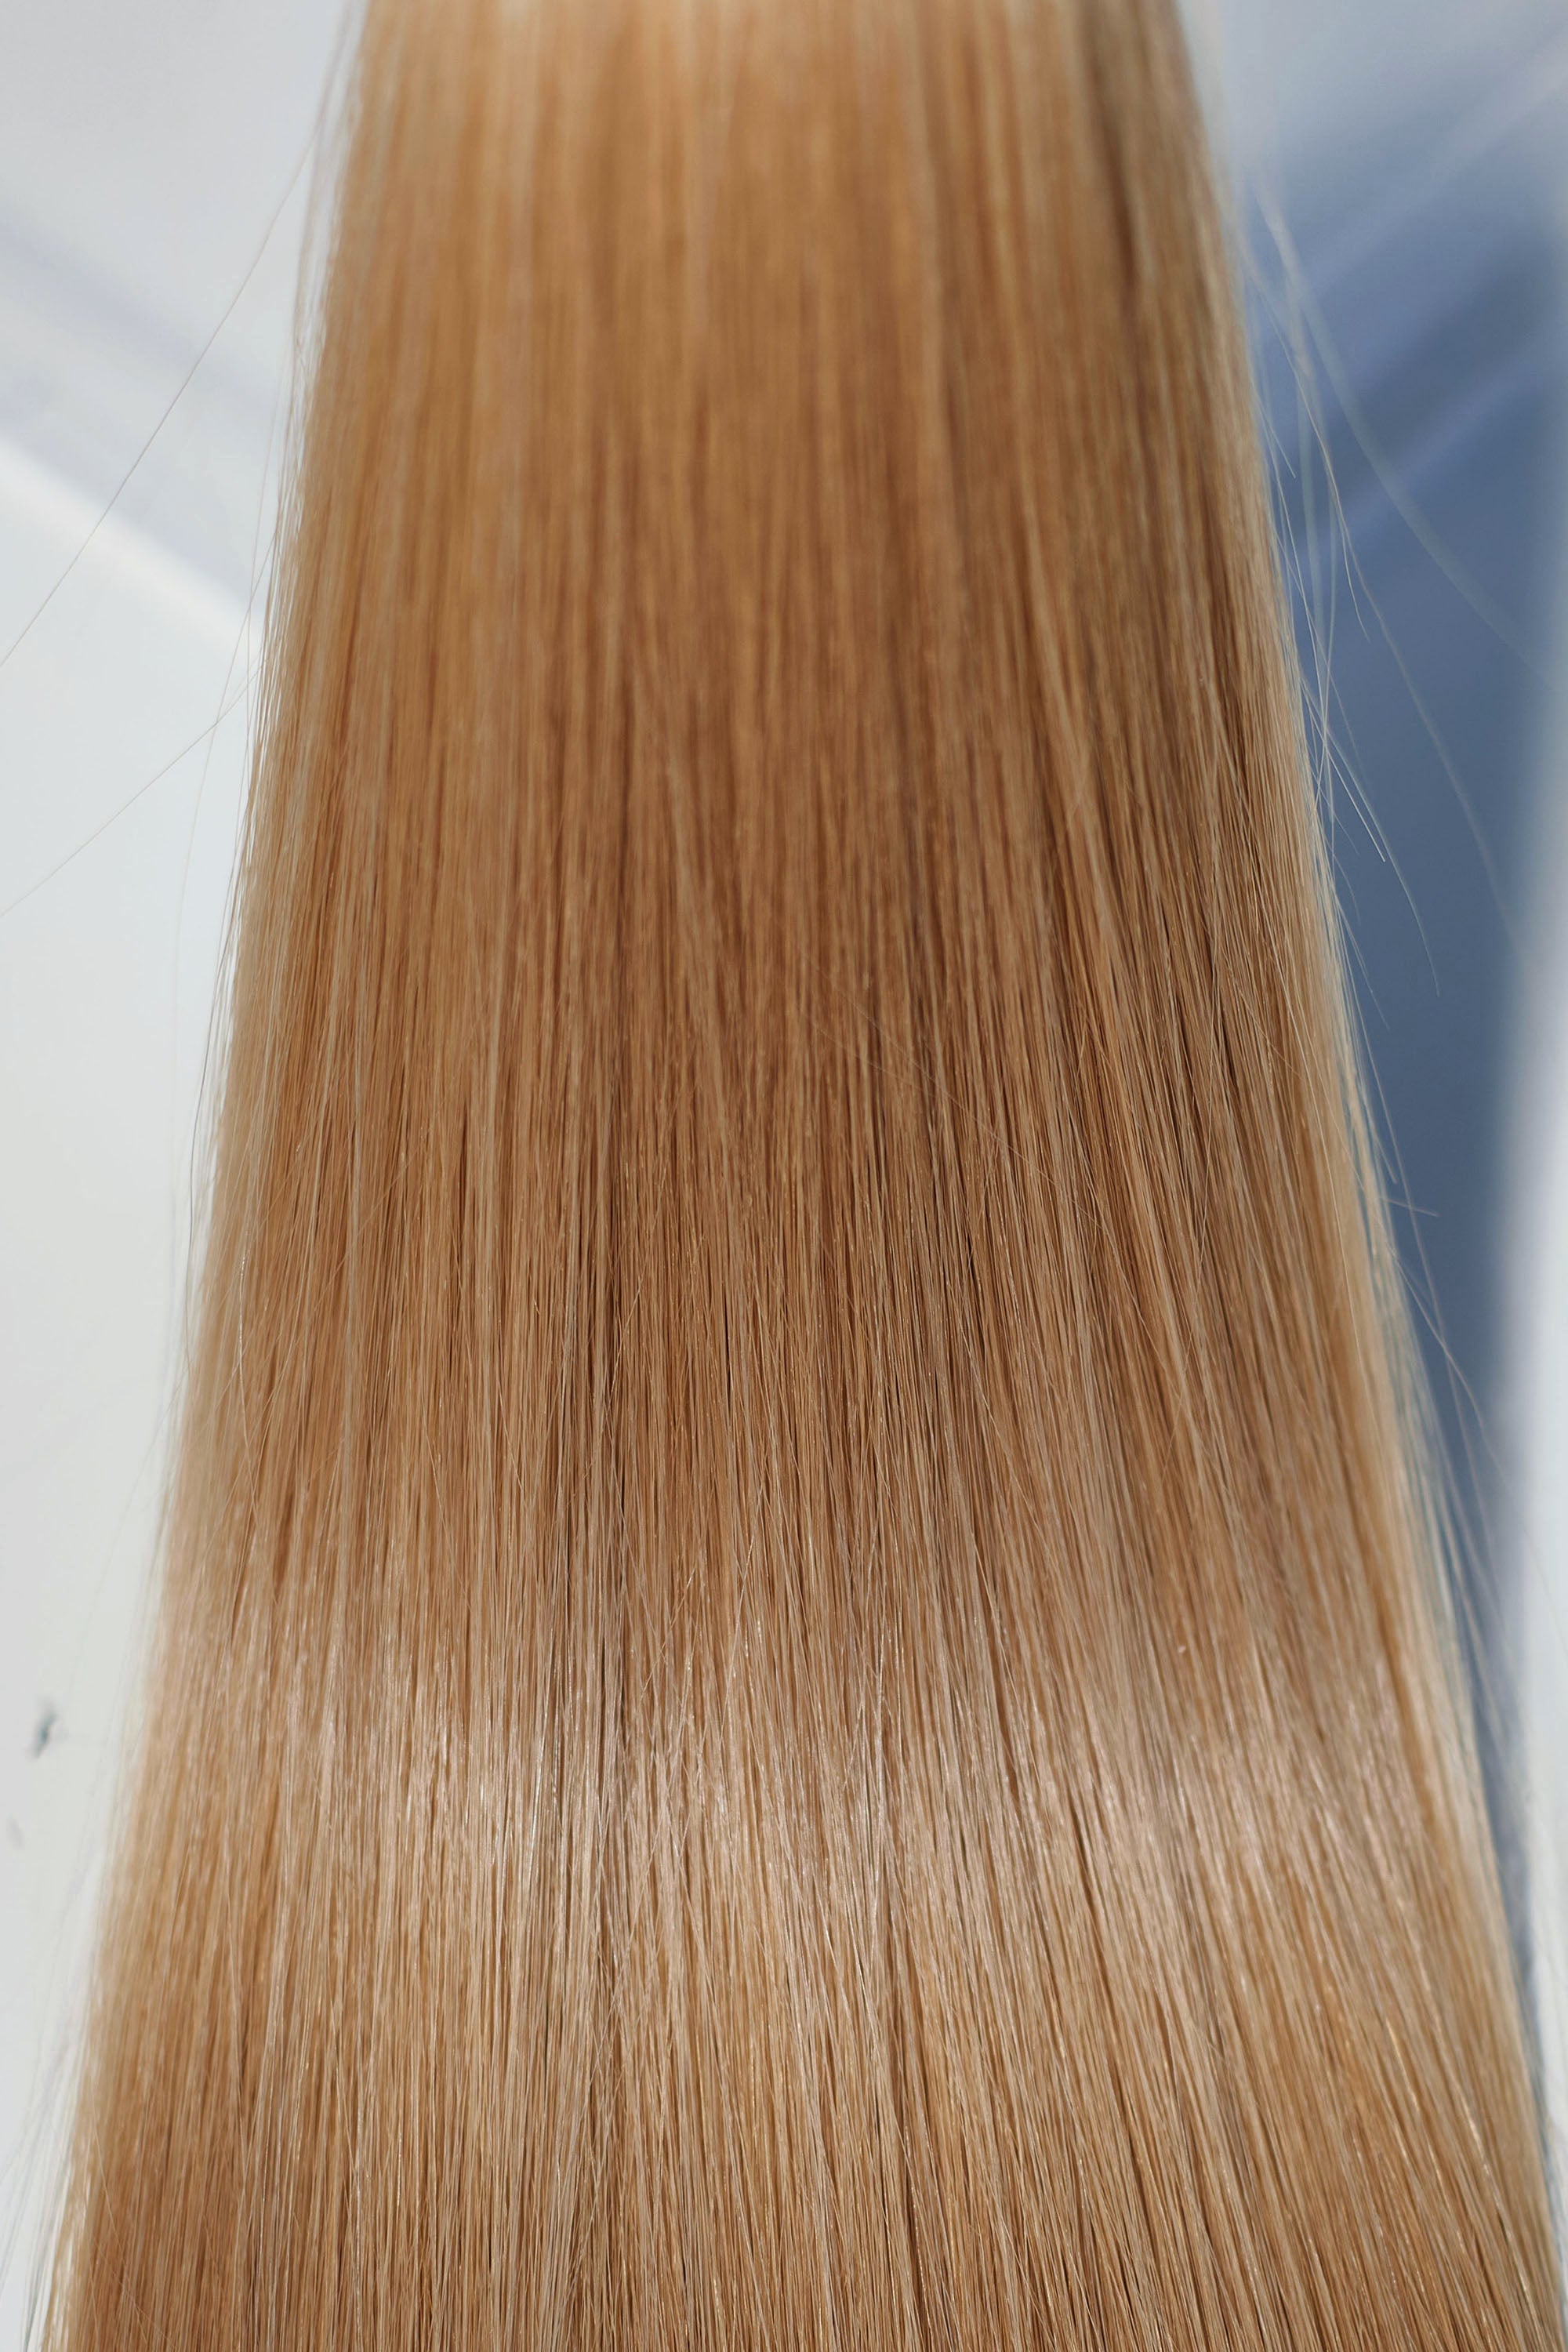 Behair professional Bulk hair "Premium" 20" (50cm) Natural Straight Gold Sand #18 - 25g hair extensions